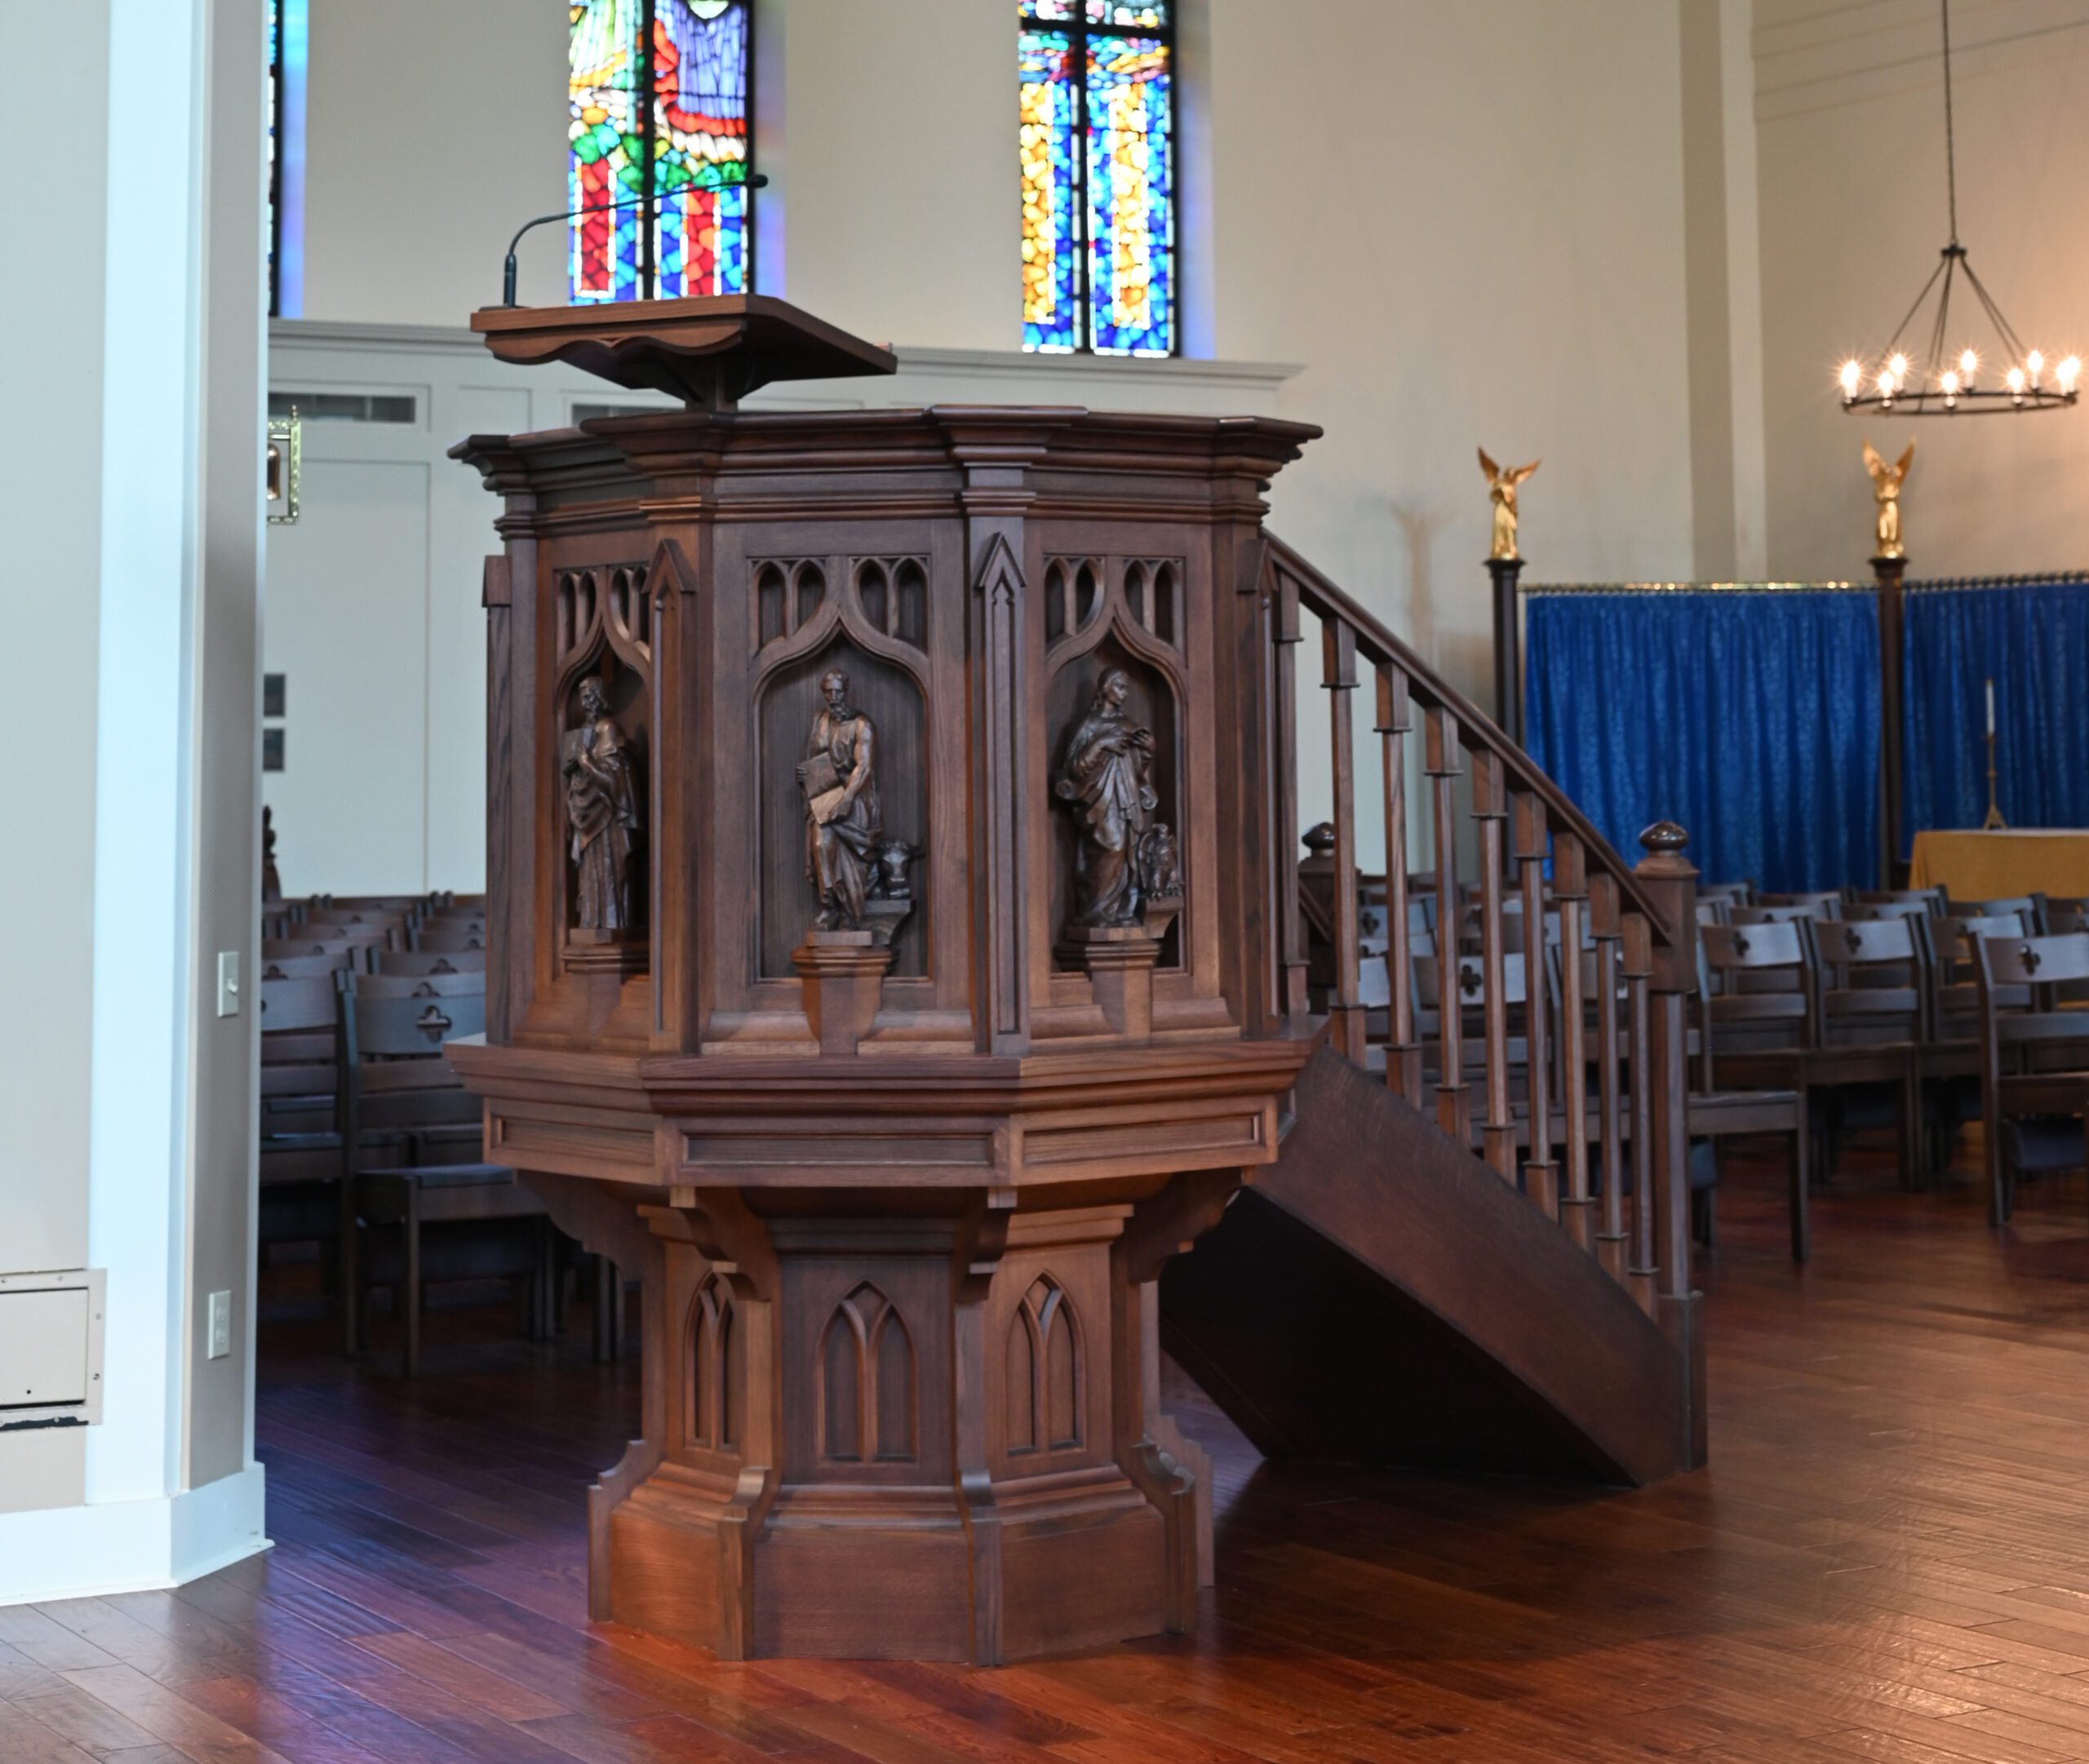 church furniture